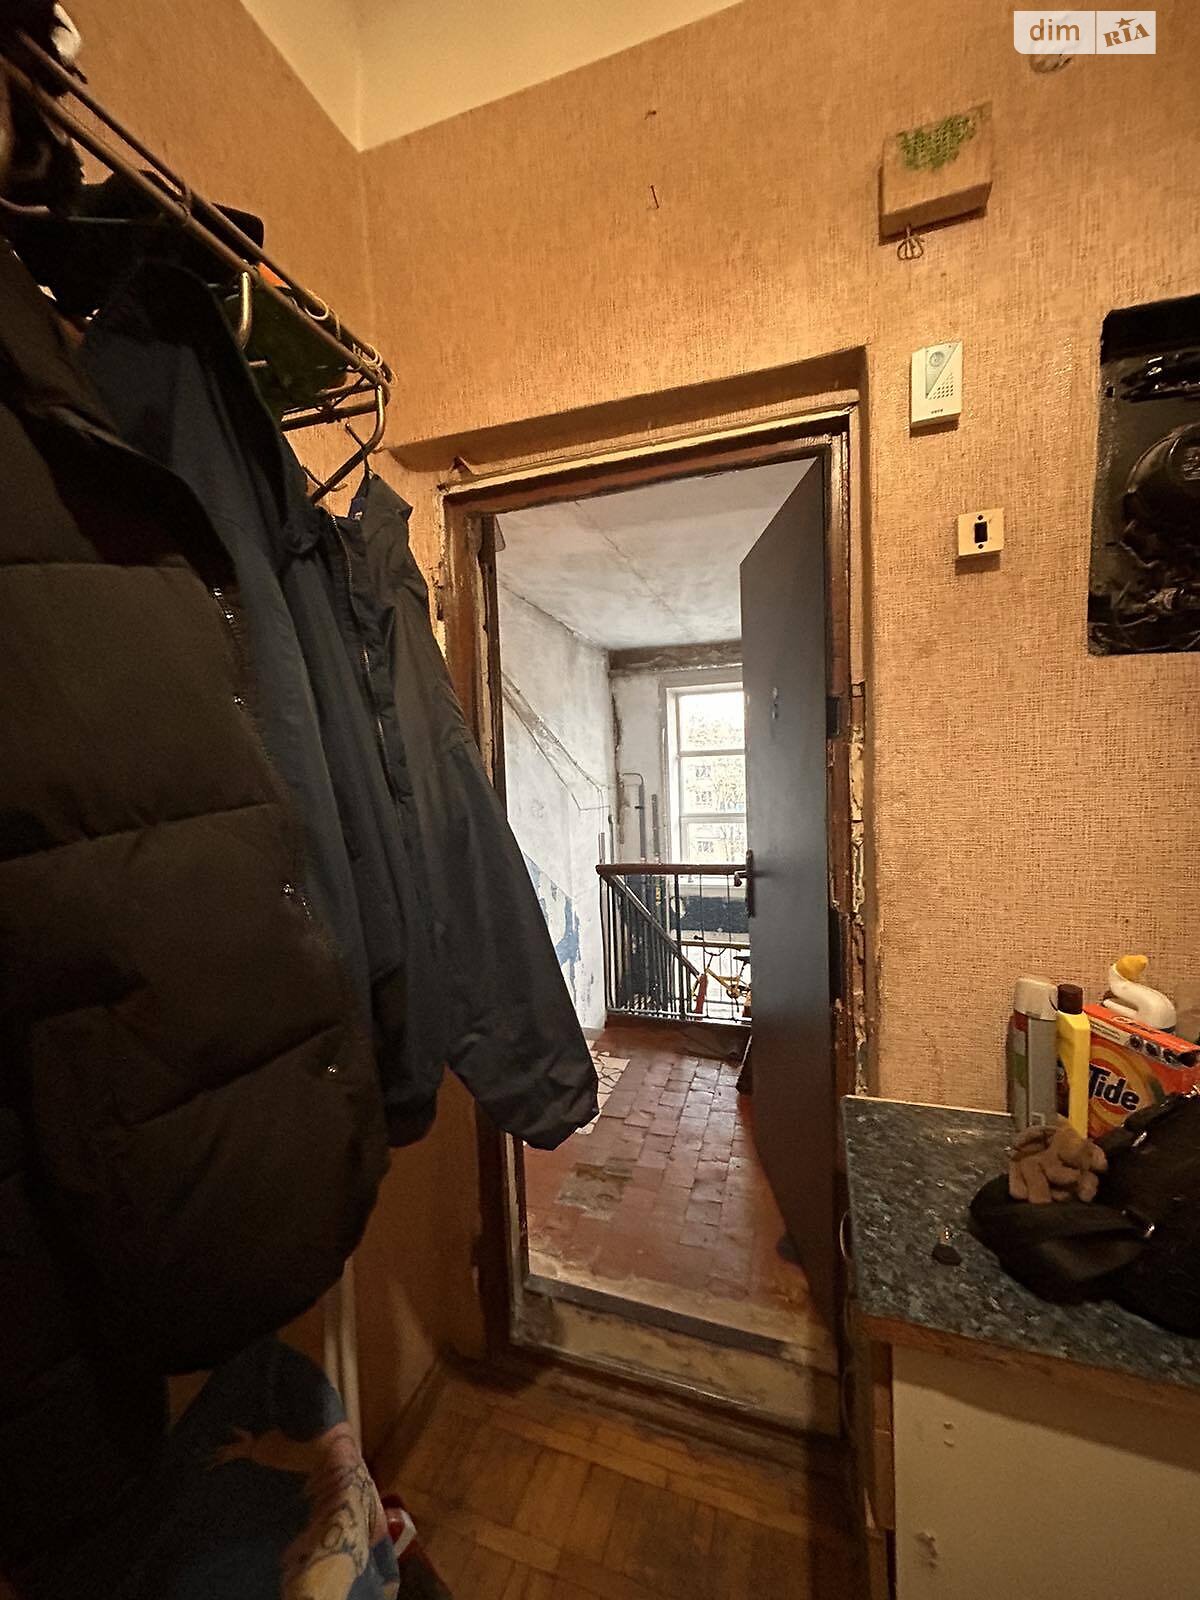 Продажа однокомнатной квартиры в Харькове, на ул. Маршала Рыбалко 89, район Индустриальный фото 1